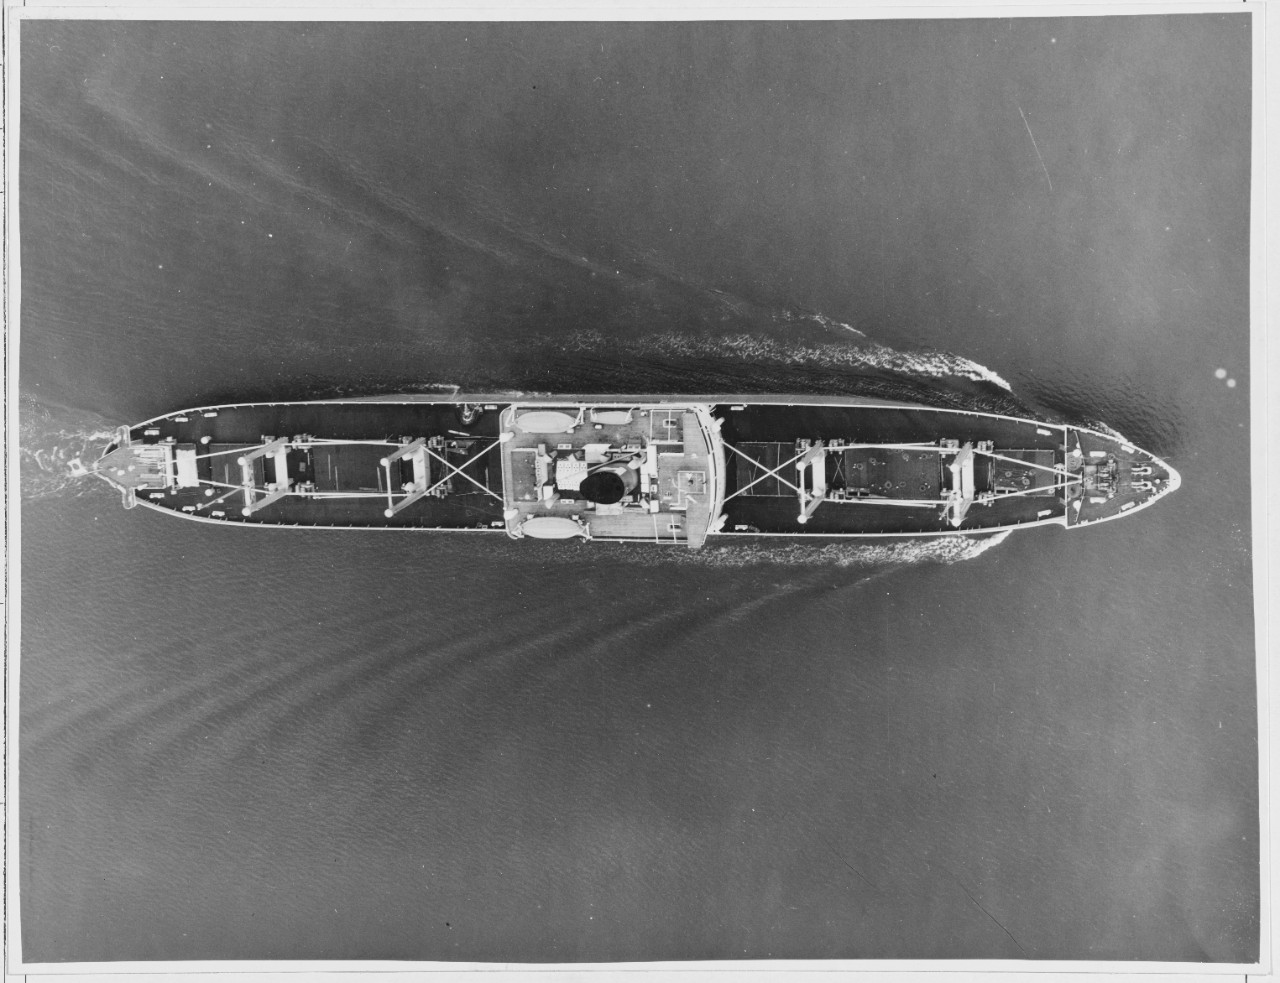 Japanese ship: KIYOKAWA MARU, June 21, 1937